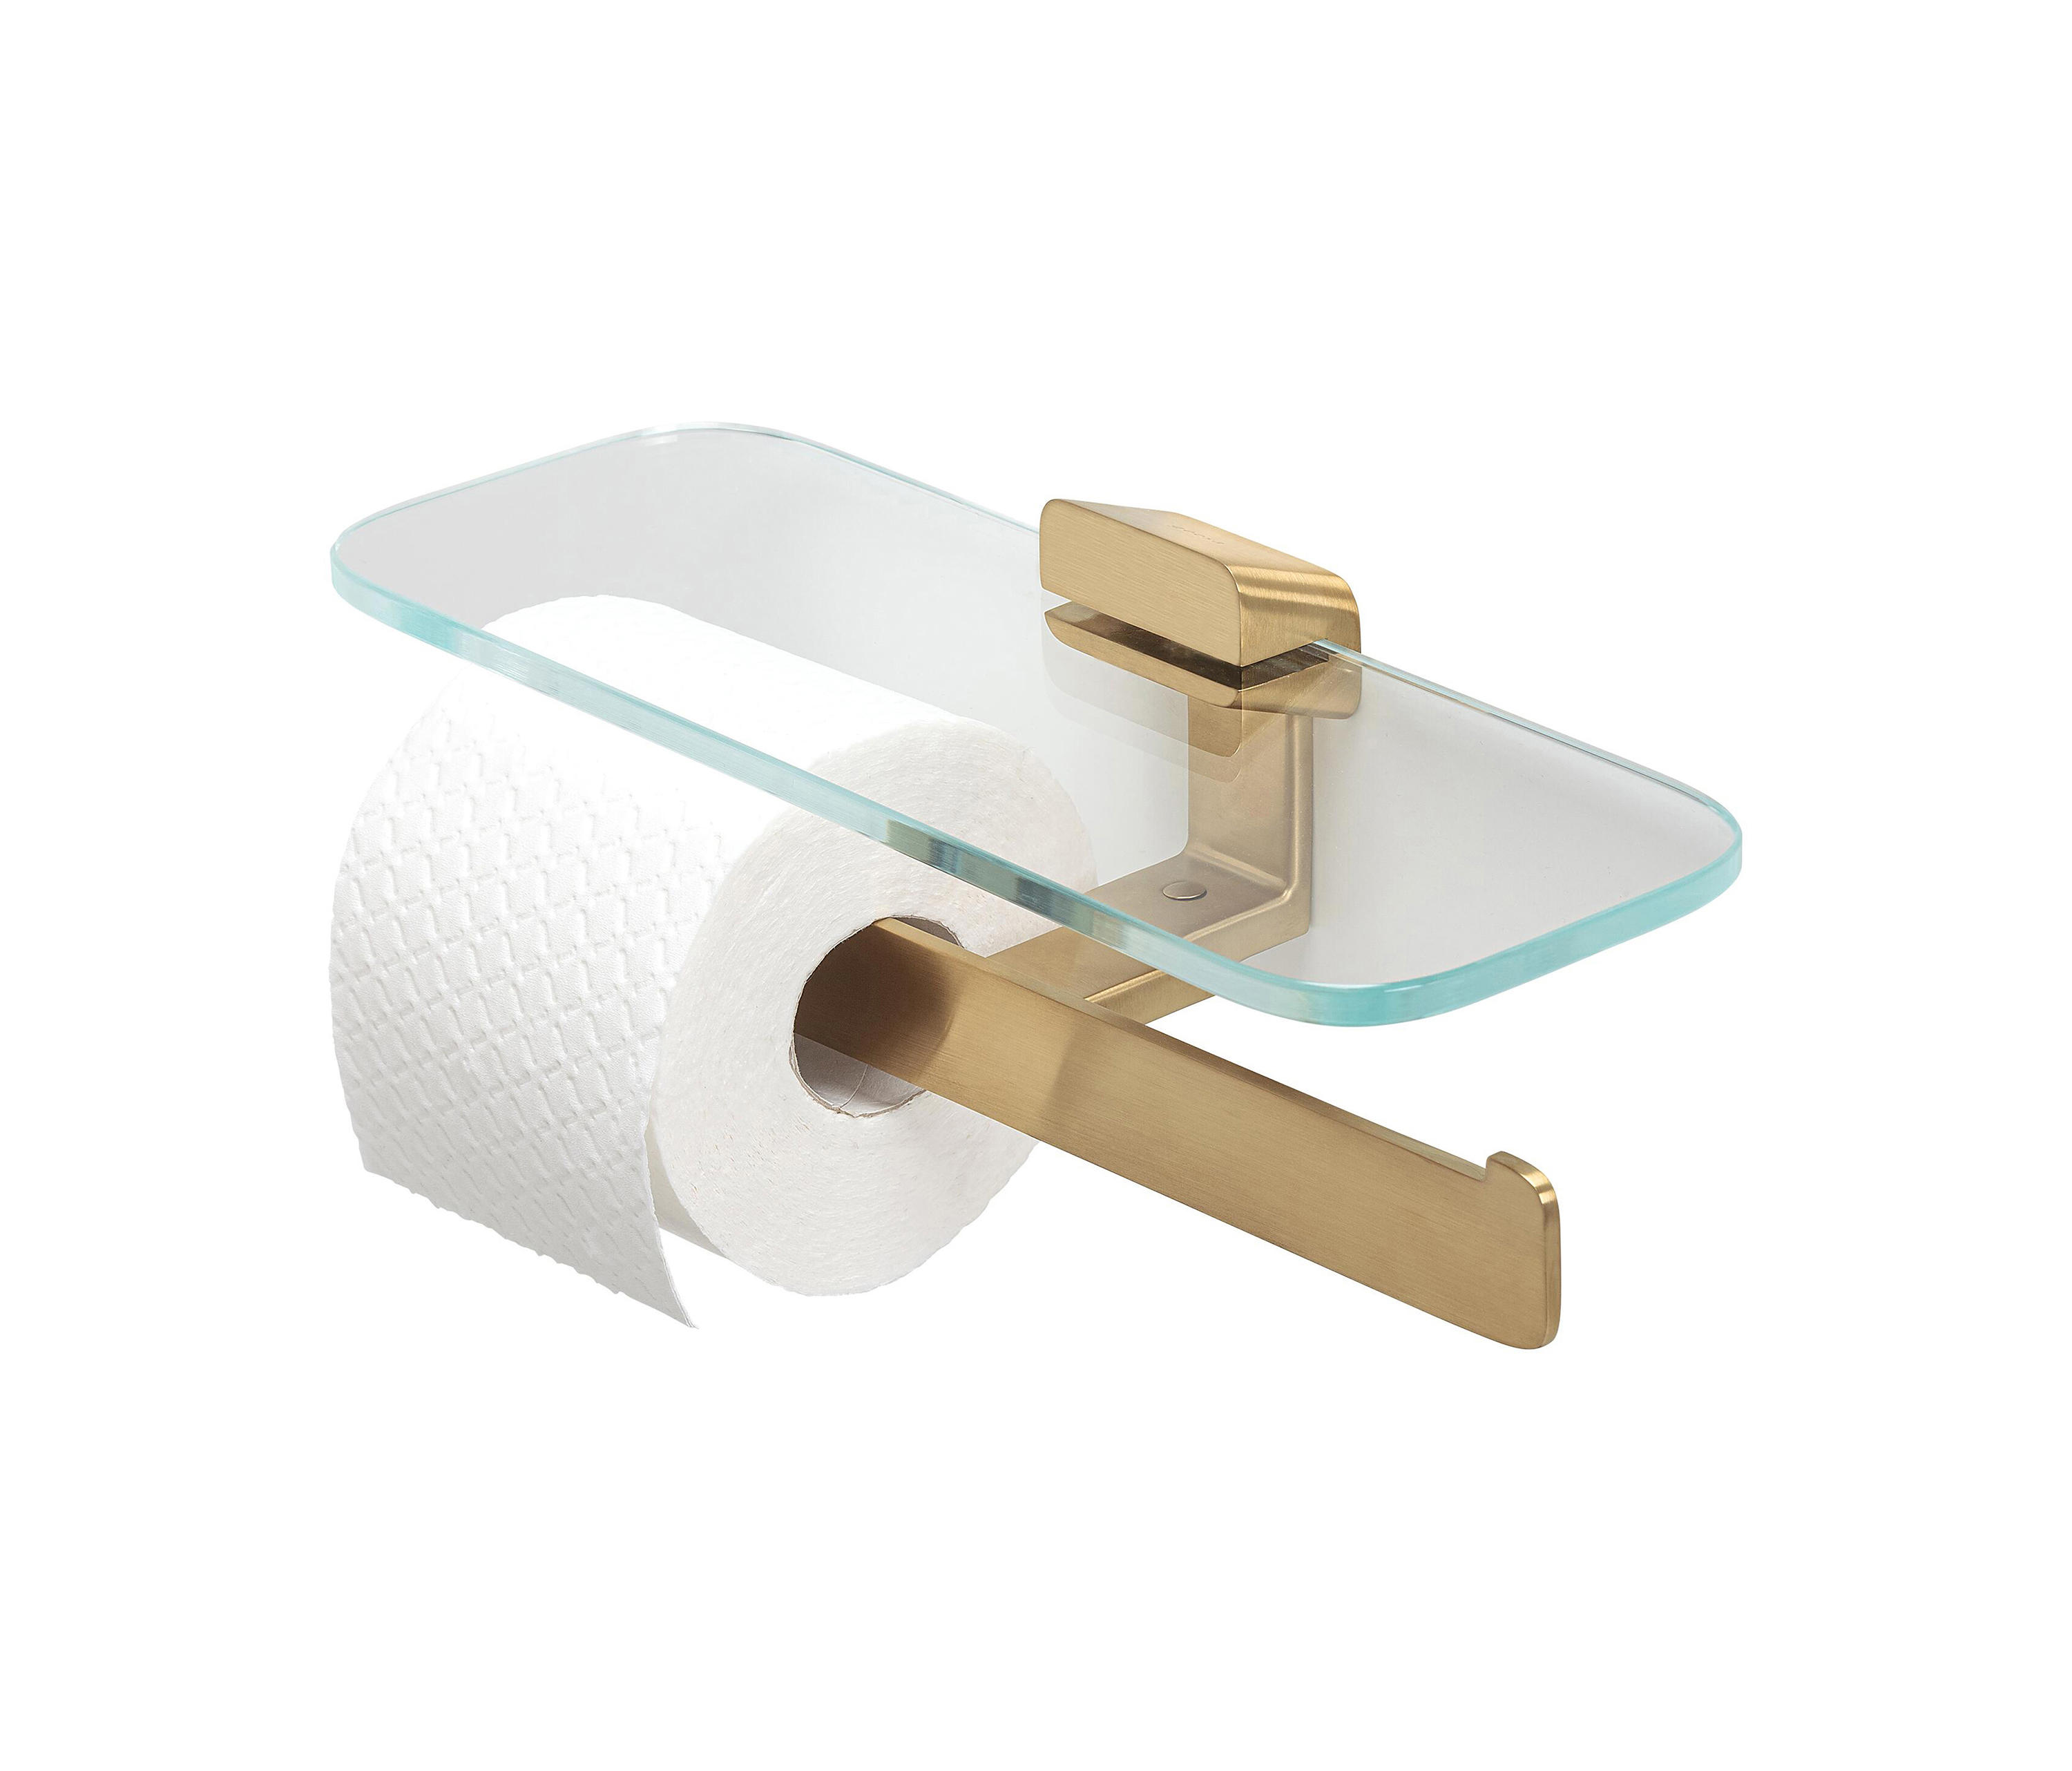 30cm large Toilet Paper Roll Holder Racks Holder Kitchen Tissue